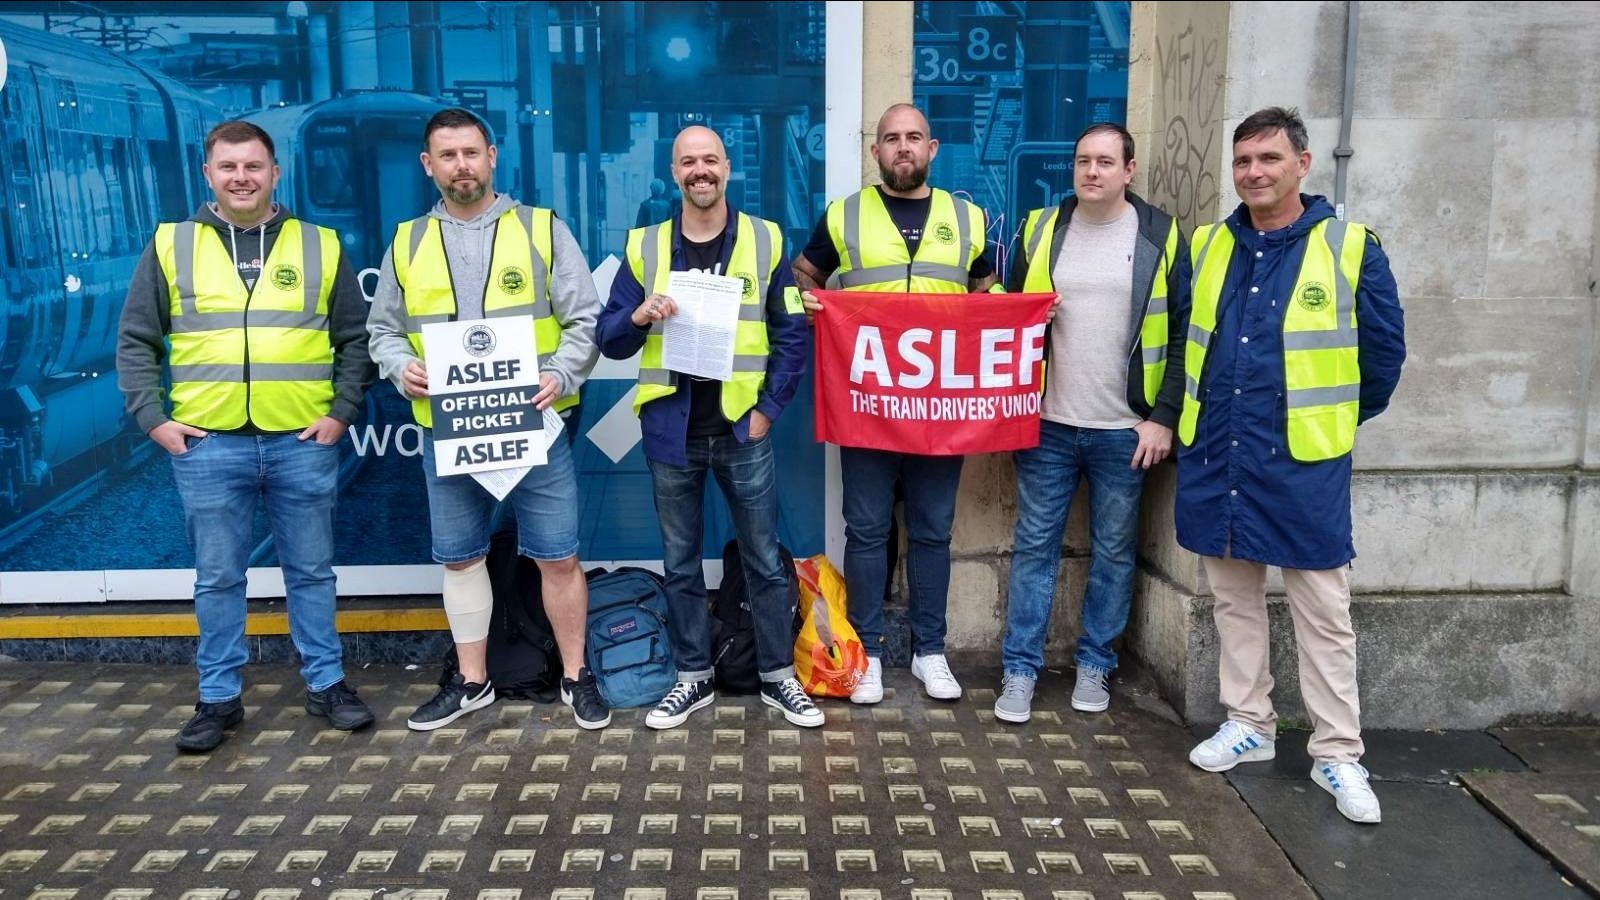 Ein Erfolg im Kampf der britischen Bahnfahrer bedeutet, den Verrat der ASLEF durch den Kampf für Basiskomitees zu bekämpfen